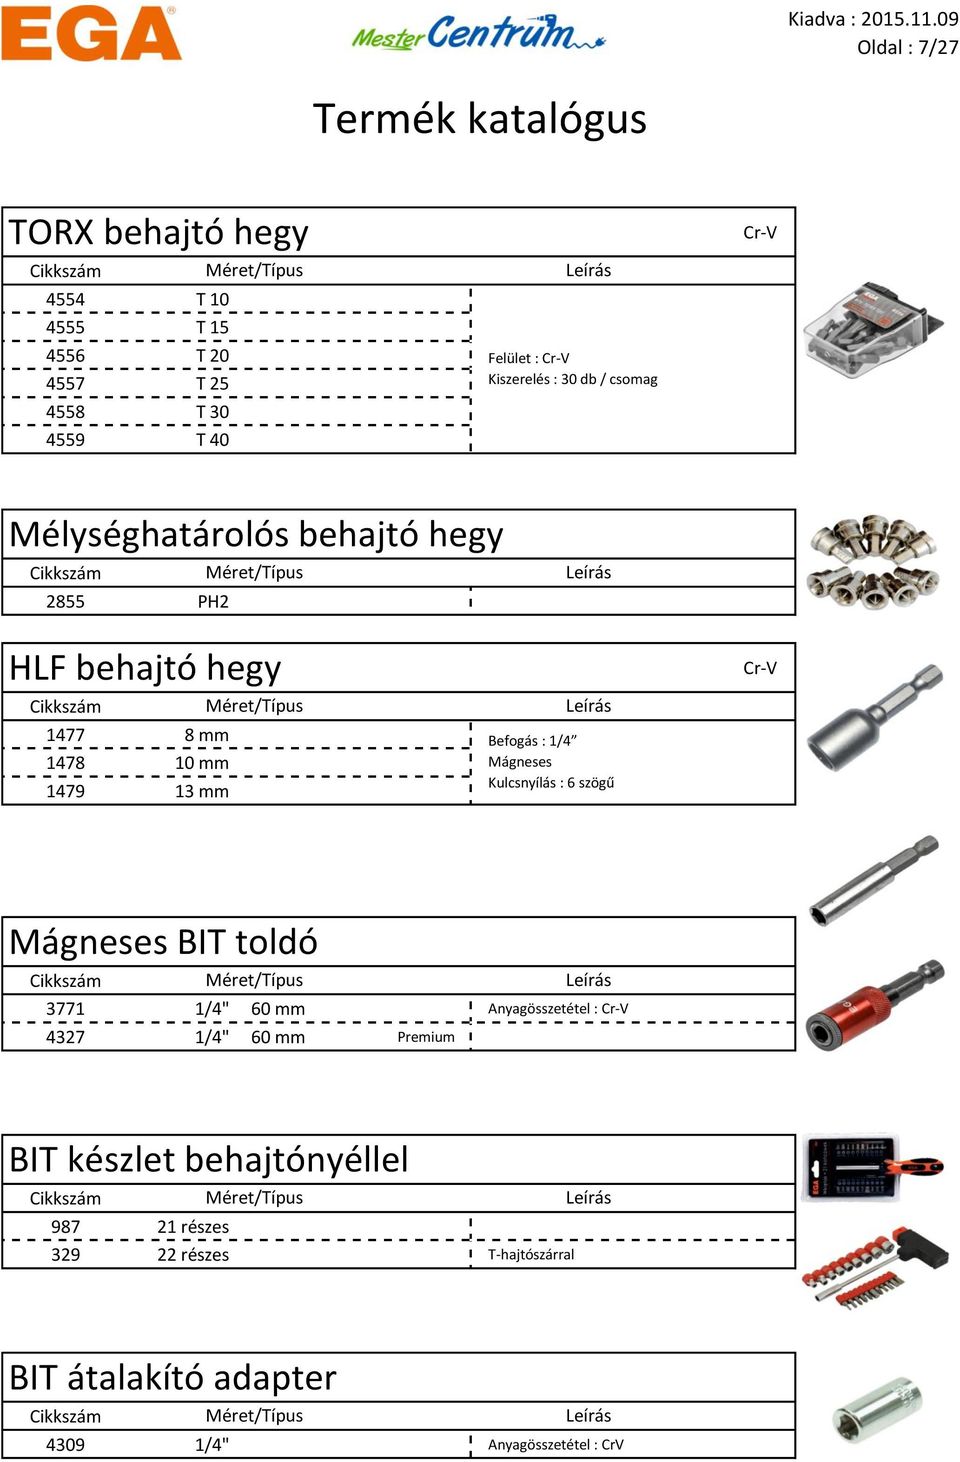 1/4 Mágneses Kulcsnyílás : 6 szögű Mágneses BIT toldó 3771 1/4" 60 mm Anyagösszetétel : 4327 1/4" 60 mm Premium BIT